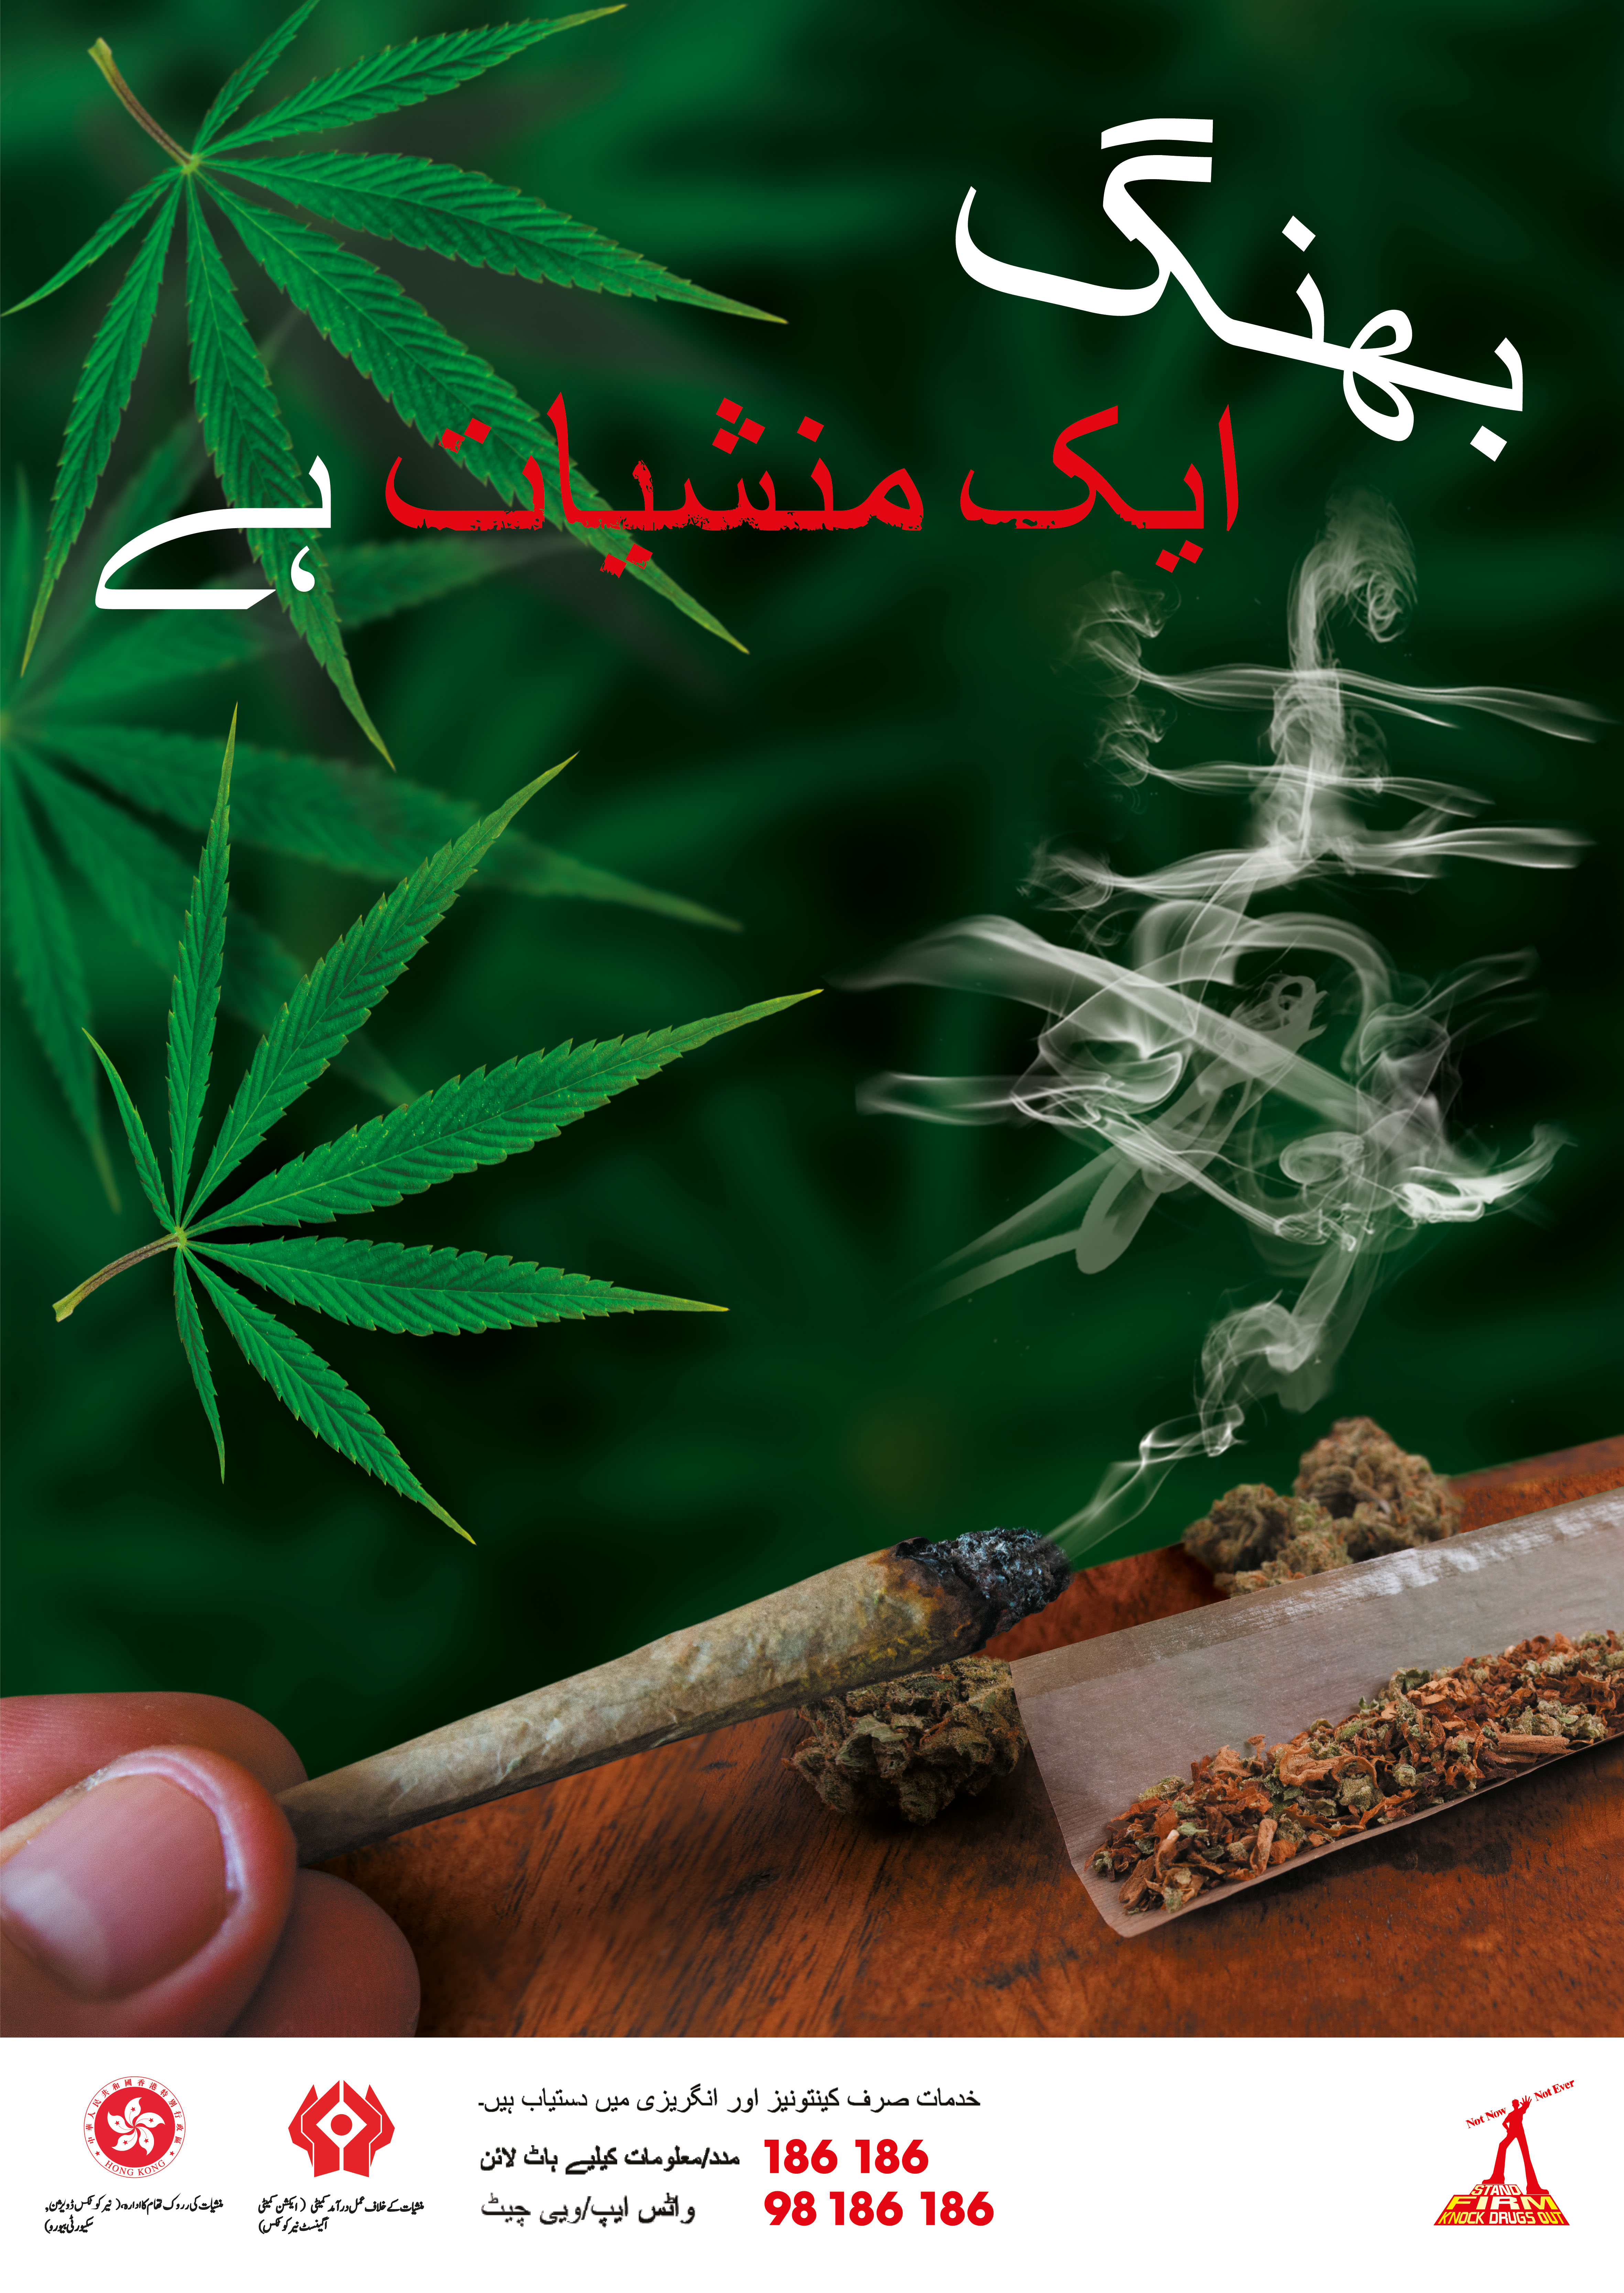 禁毒海报「 大麻係毒品 」－ 巴基斯坦文版本